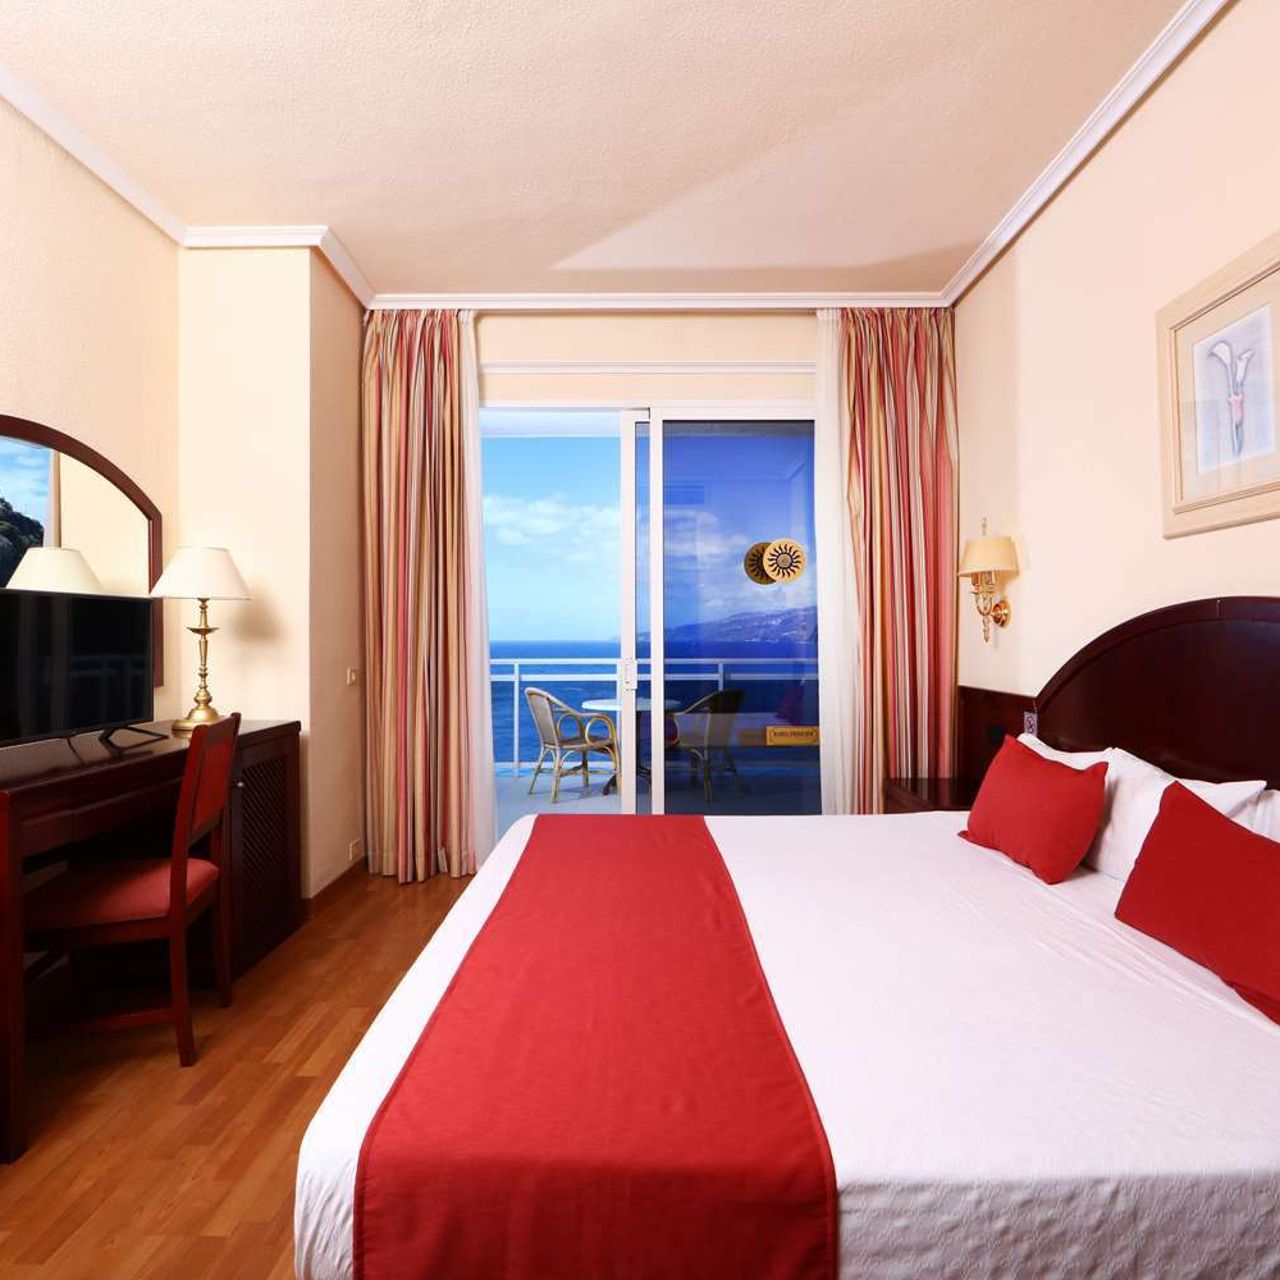 Hotel Sunlight Bahia Principe San Felipe en Puerto de la Cruz - HOTEL INFO